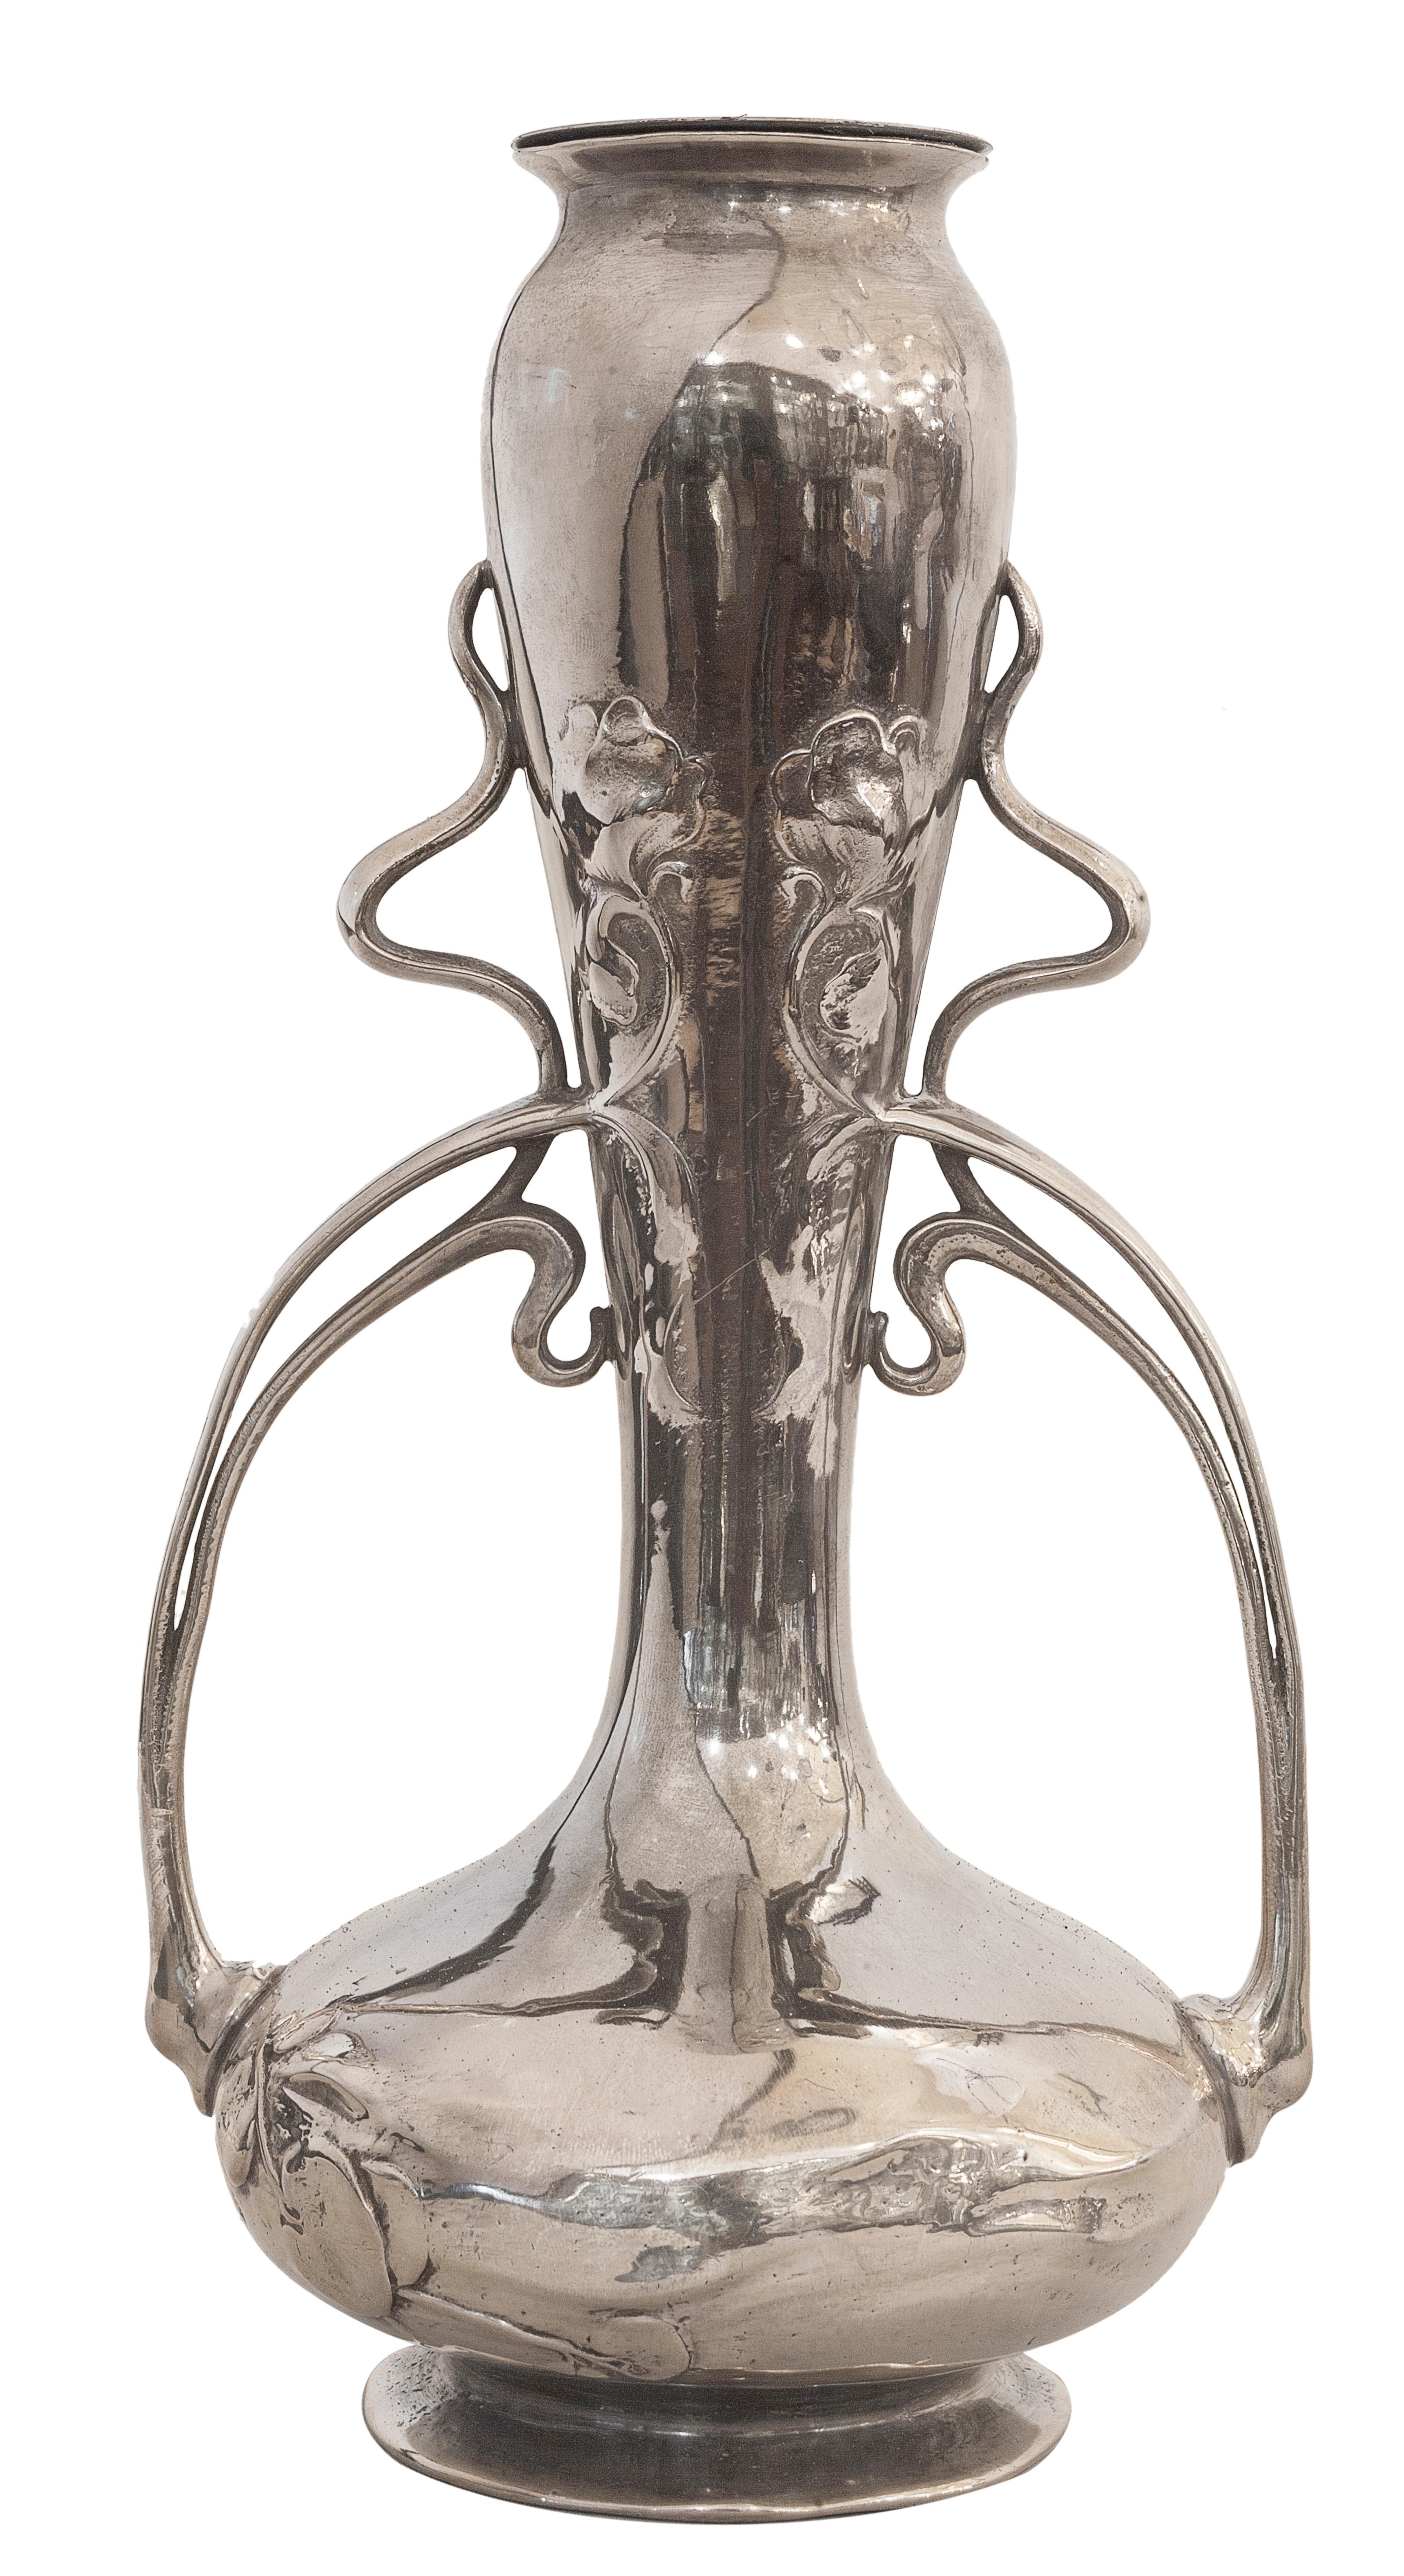 Vases, Jugendstil, Art Nouveau, Liberty, German, 1910, WMF For Sale 6